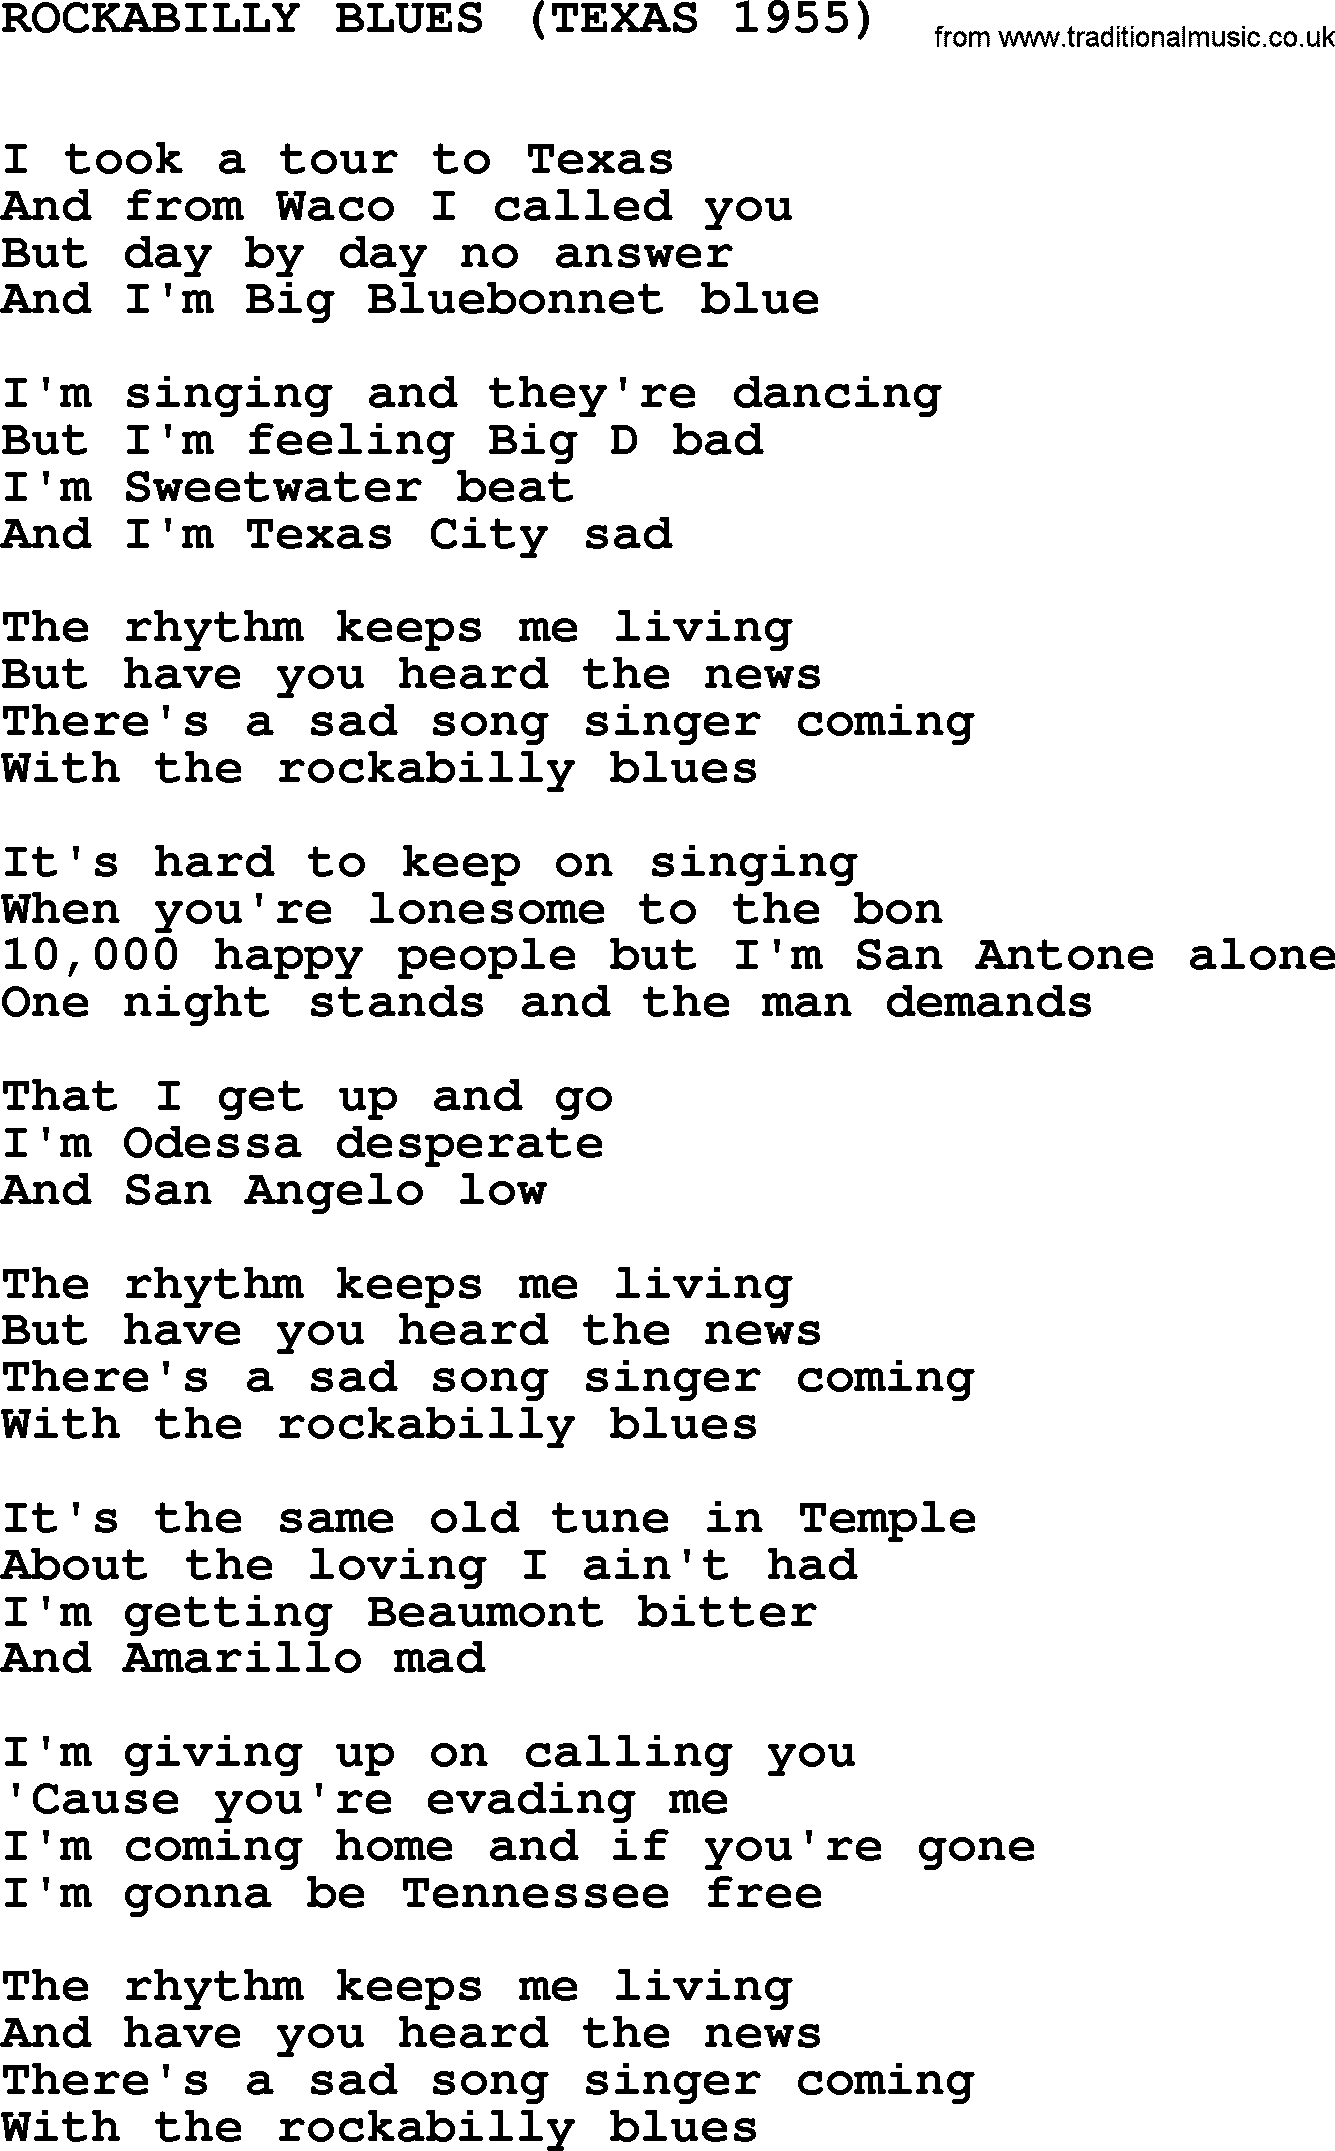 Johnny Cash song Rockabilly Blues(Texas 1955).txt lyrics